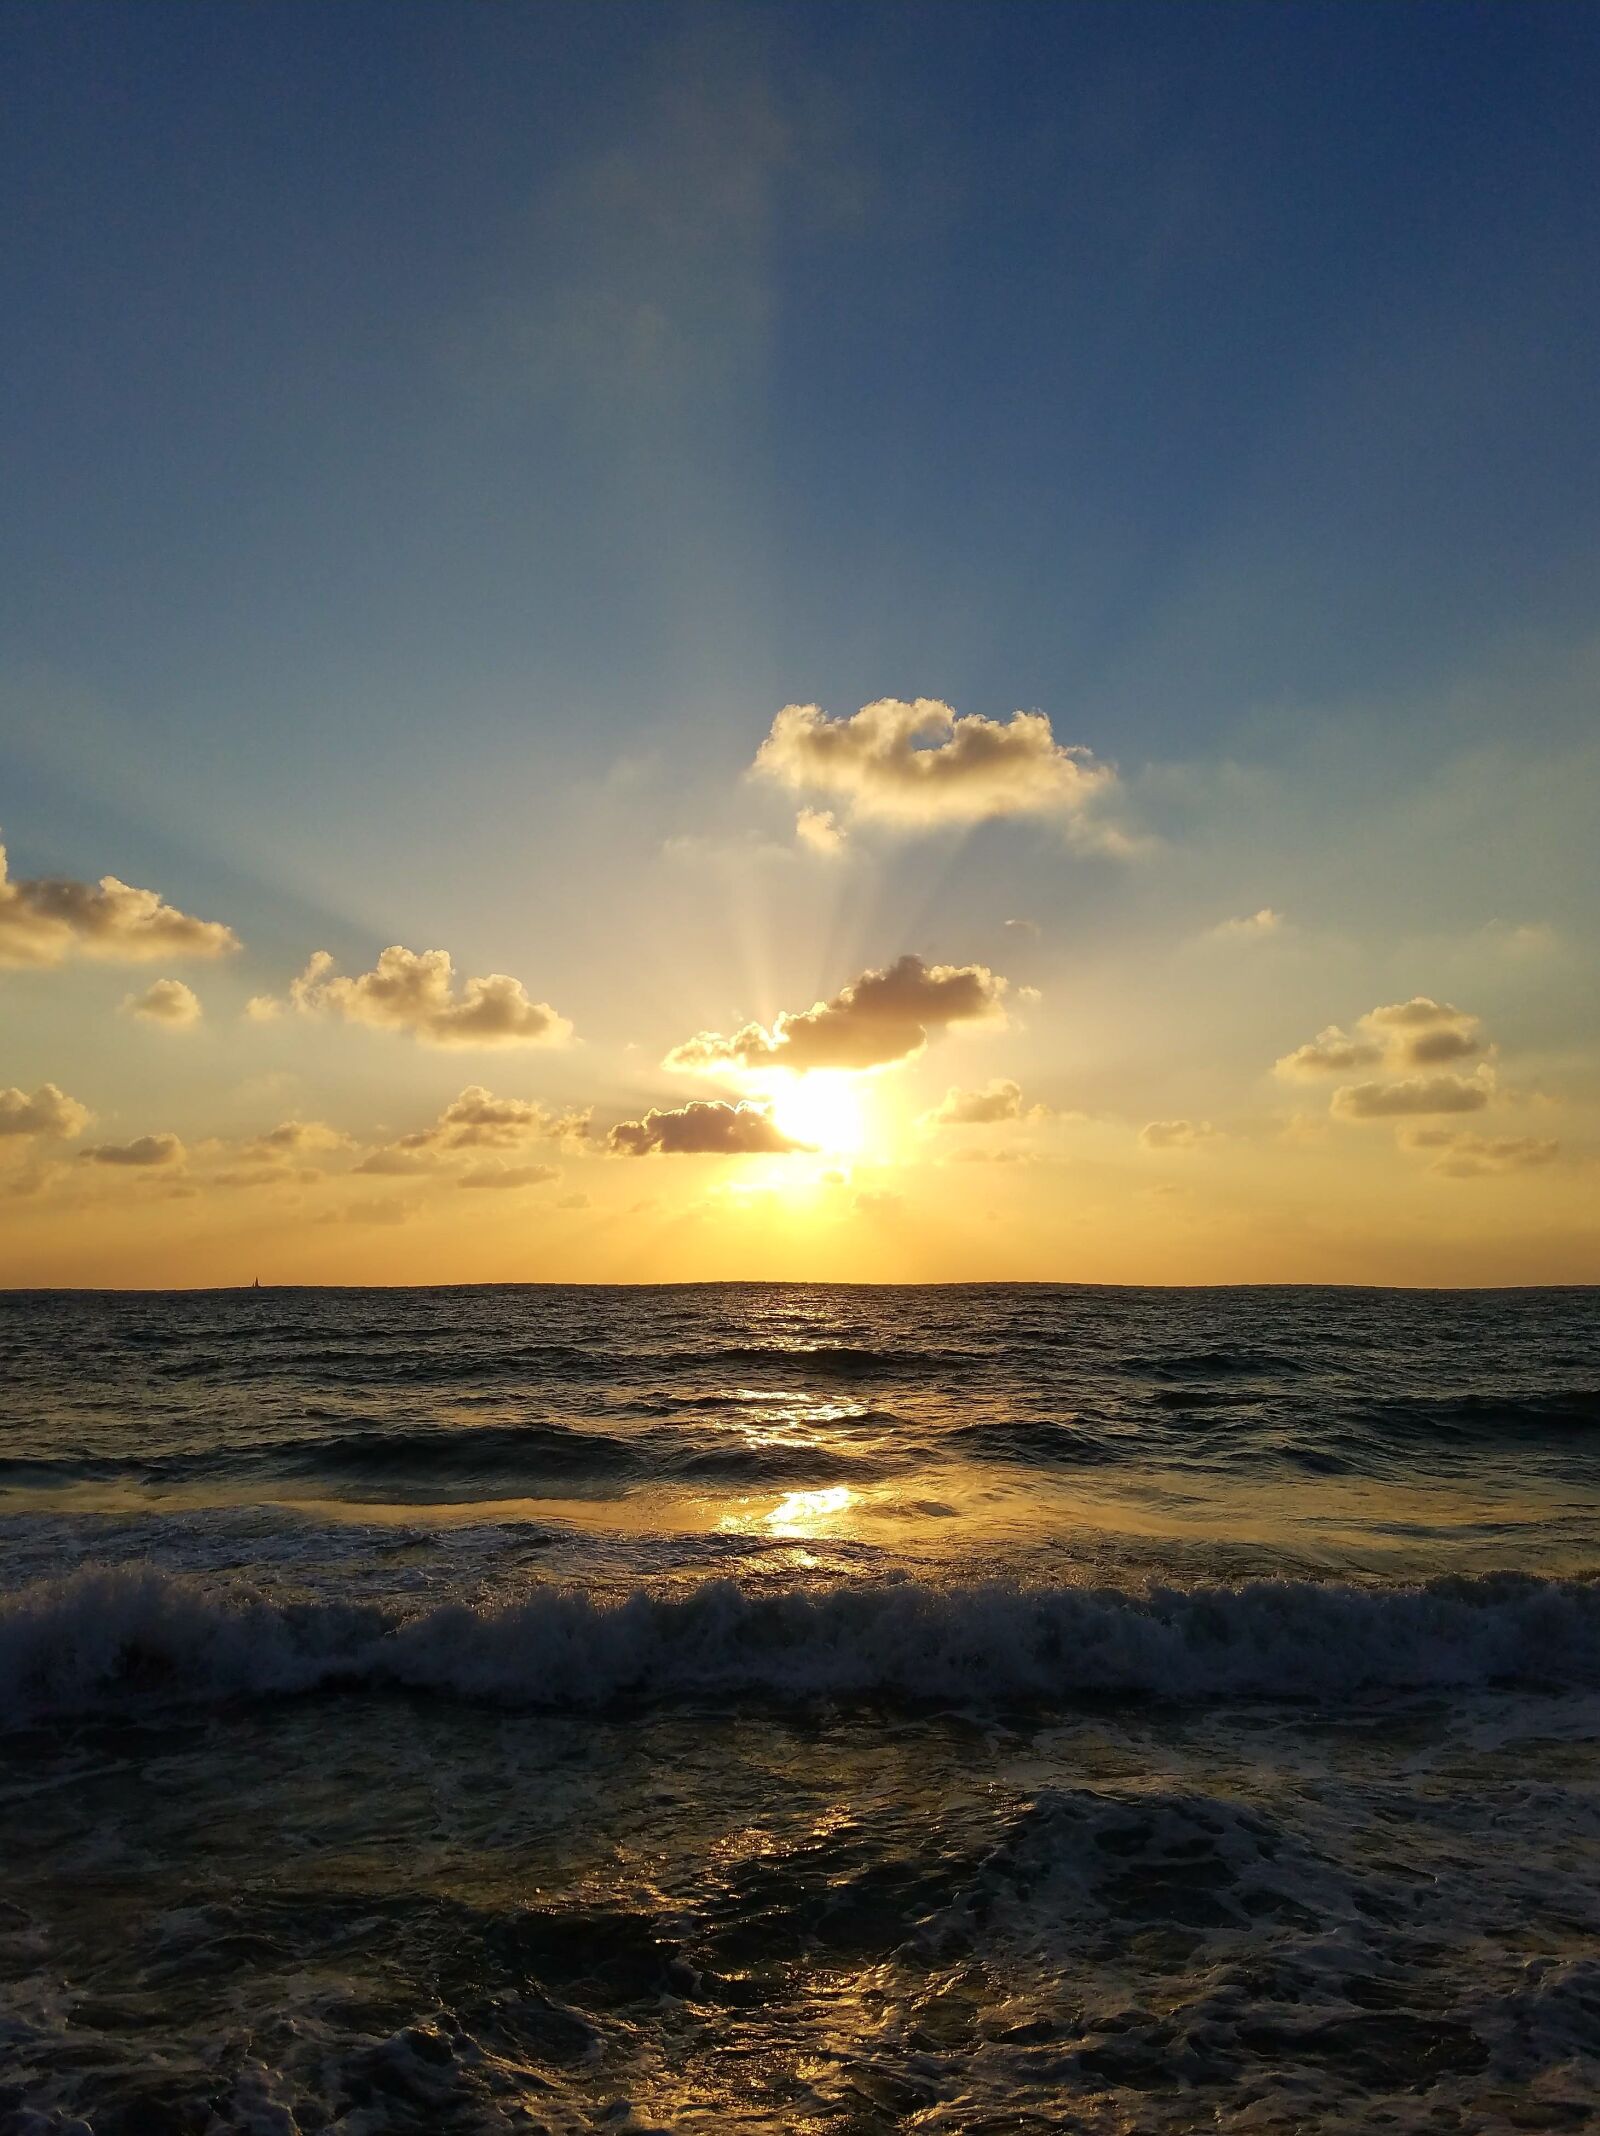 Samsung Galaxy S7 sample photo. Sea, sun, sunset photography